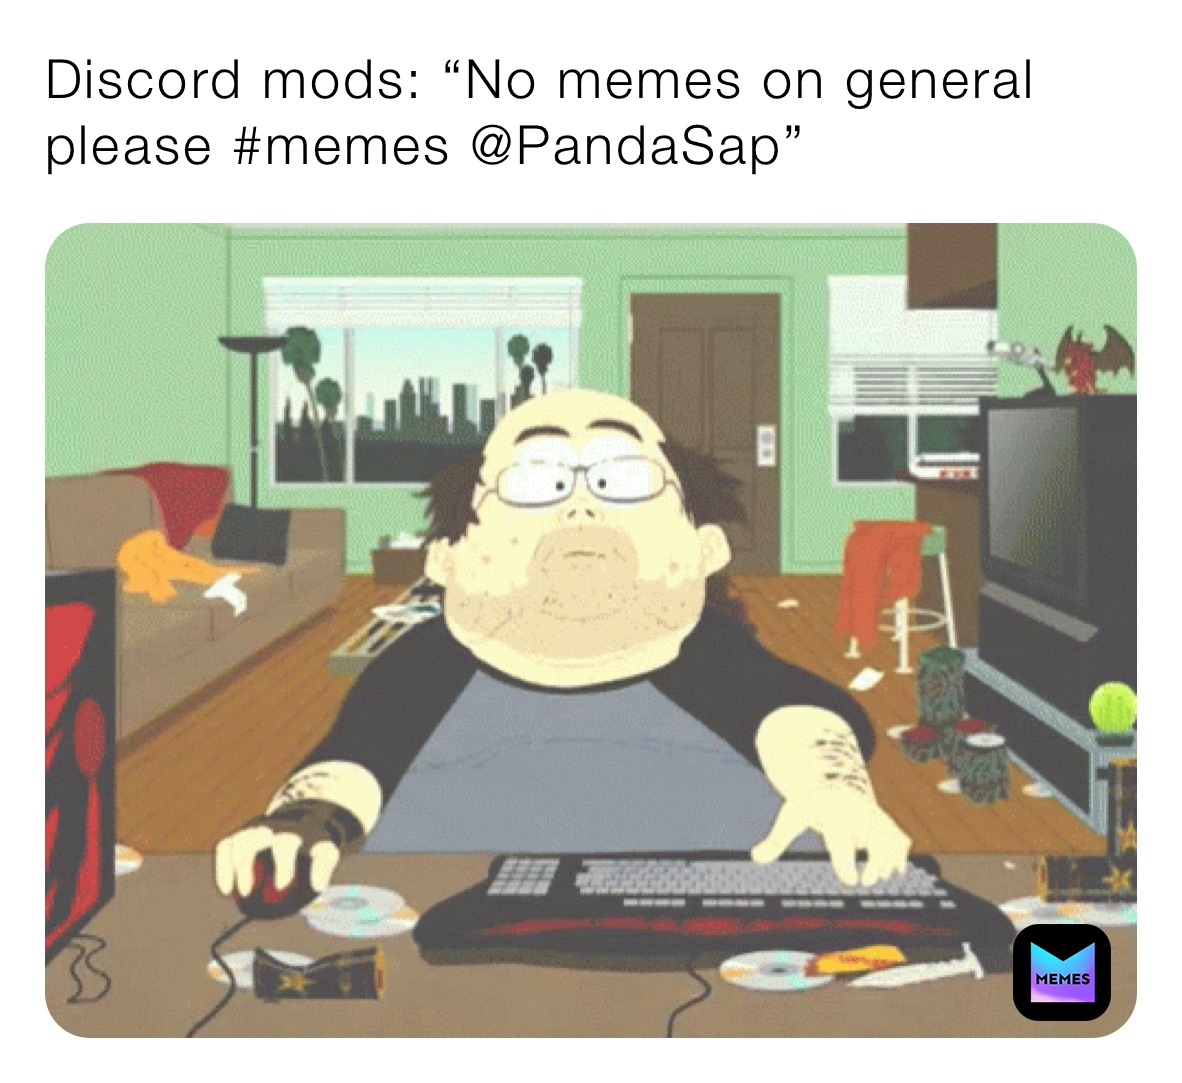 Discord mods: “No memes on general please #memes @PandaSap”